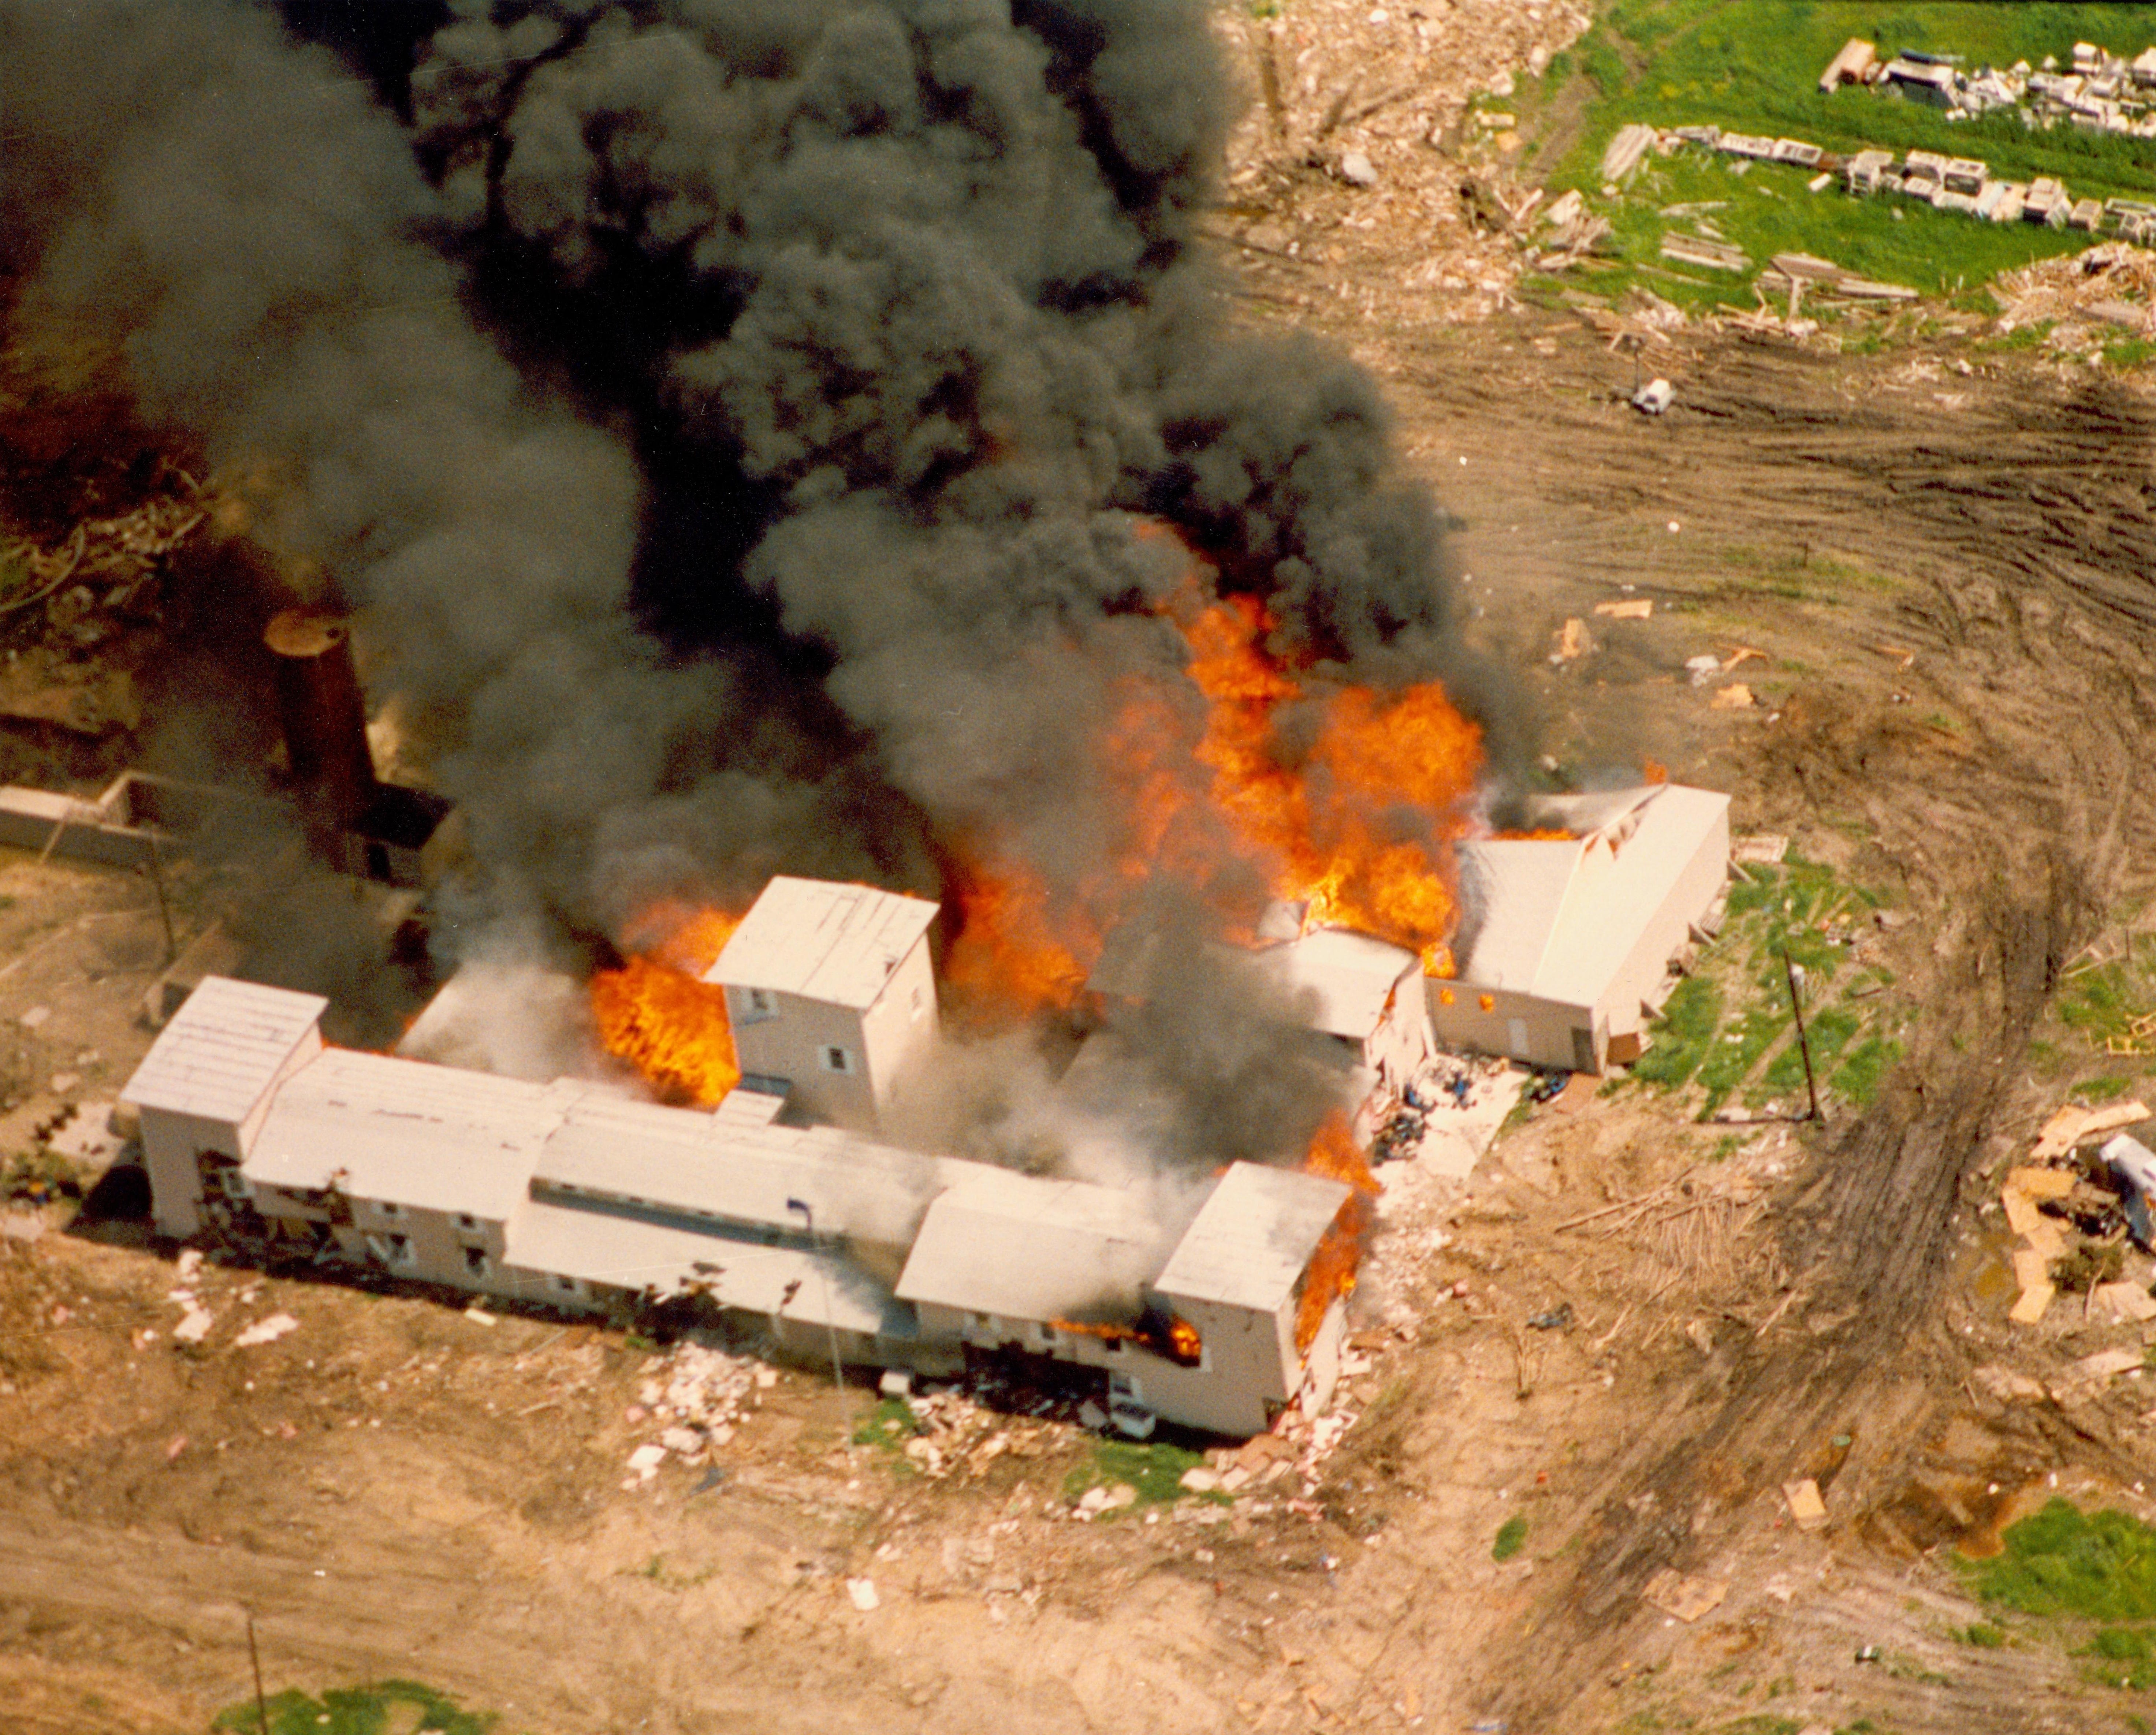 Vista aérea del complejo de la rama koresiana de la secta de los Davidianos cerca de Waco, Texas, en llamas el 19 de abril de 1993, tras 51 días de asedio por parte del FBI y las fuerzas del orden y 79 muertos.&nbsp;Wikimedia Commons / FBI